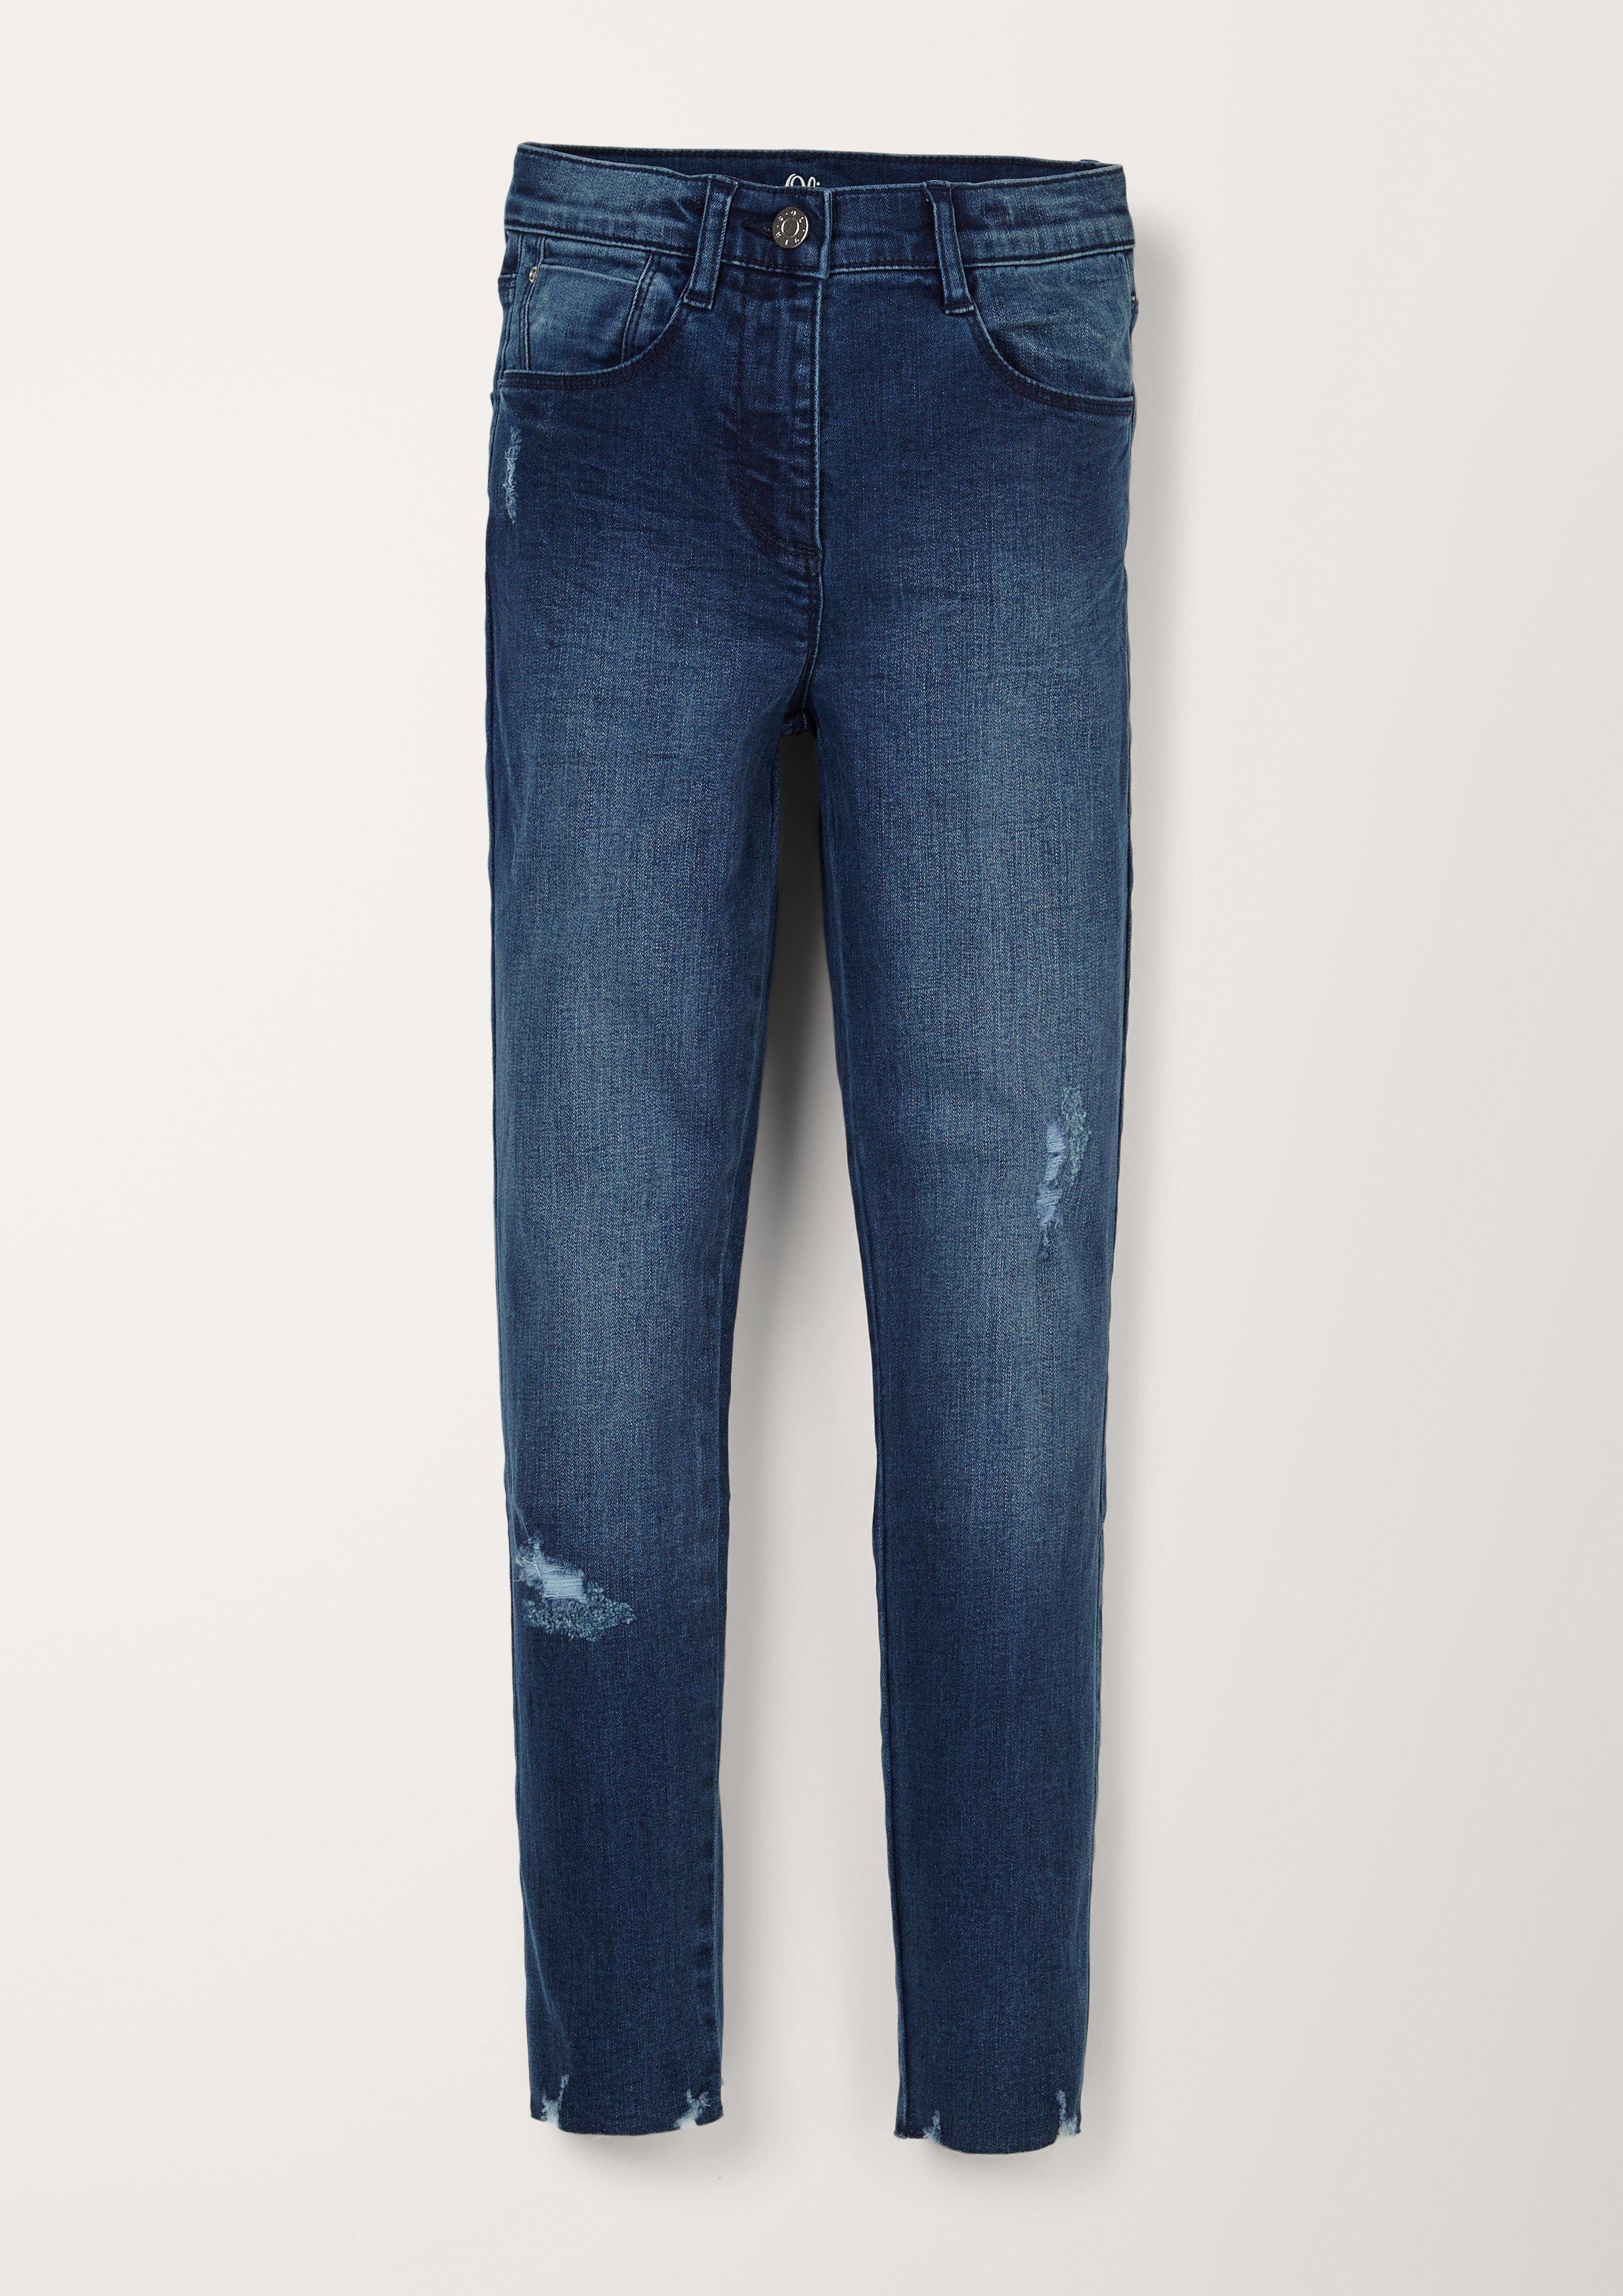 s.Oliver leg-Jeans blue Suri: Destroyes dark Skinny 5-Pocket-Jeans Skinny